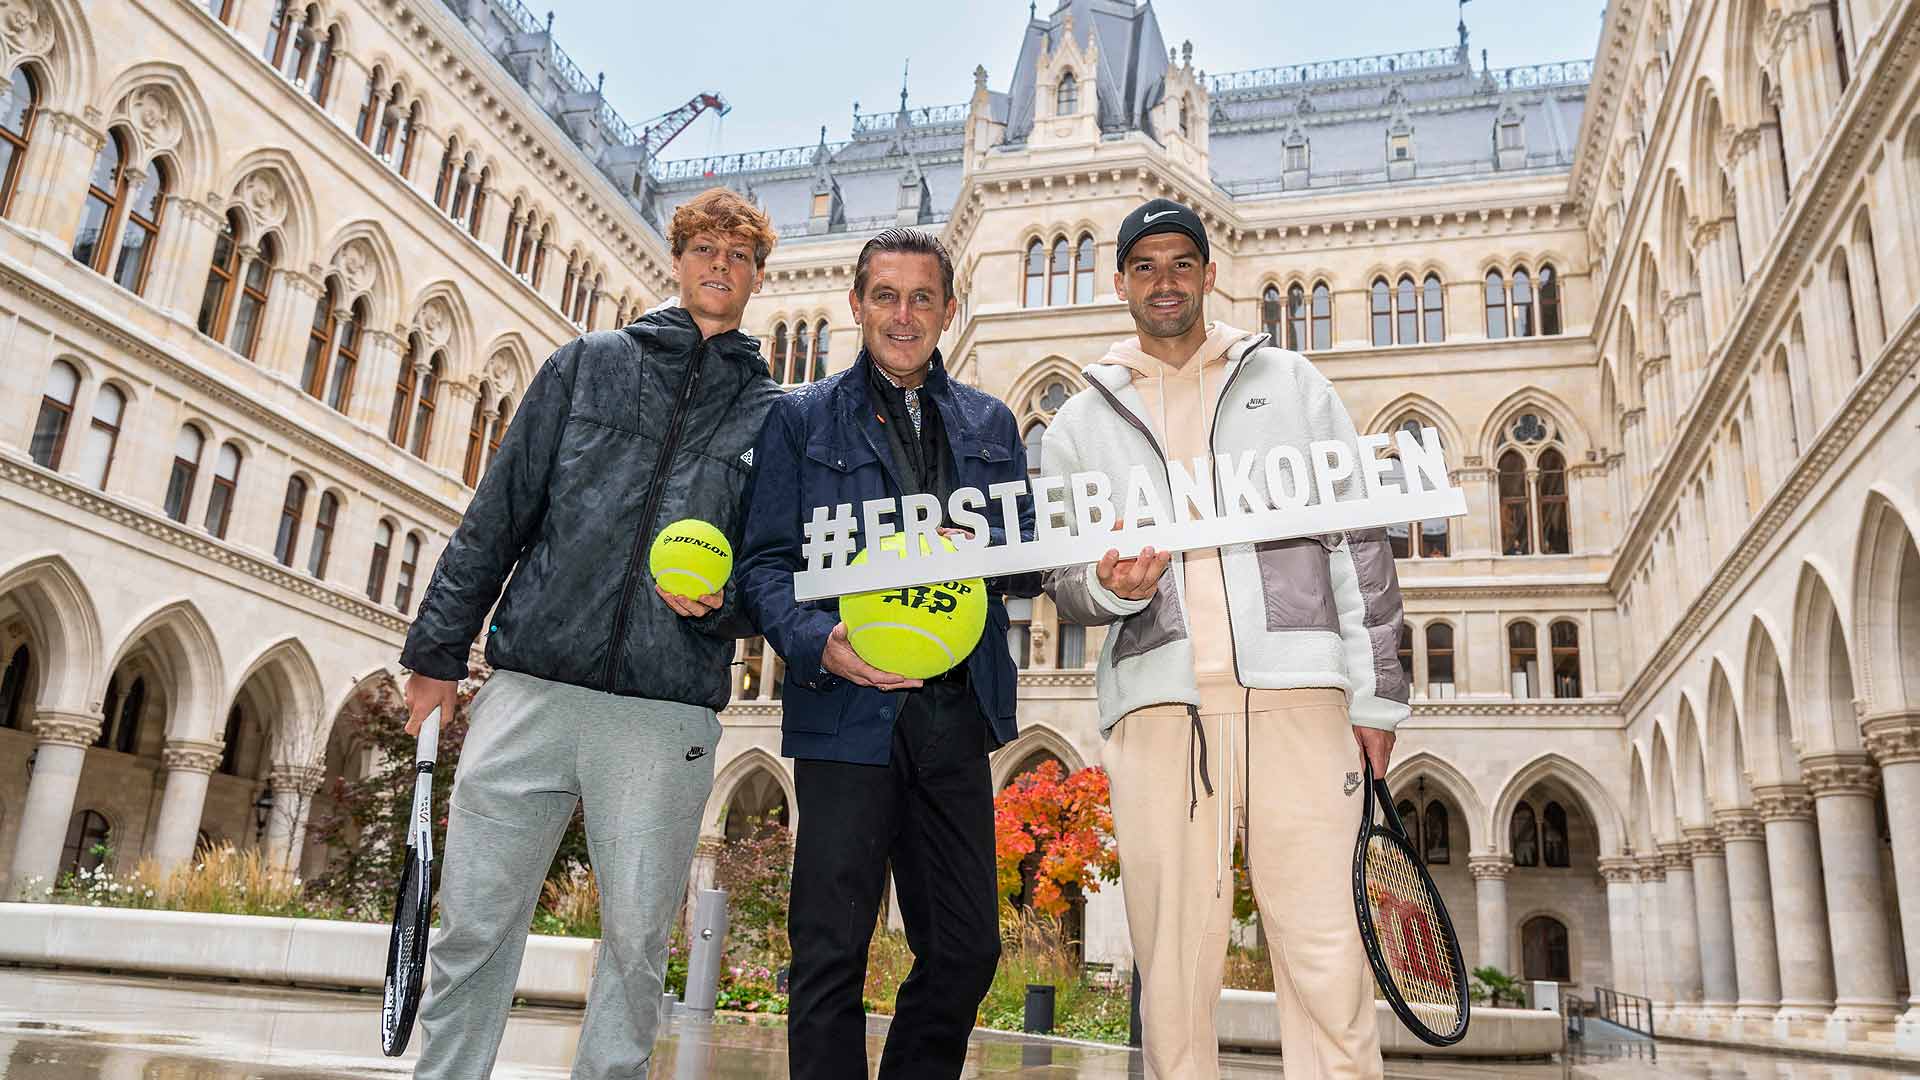 ATP Vienna - Erste Bank Open 2022: Participants, draw, schedule